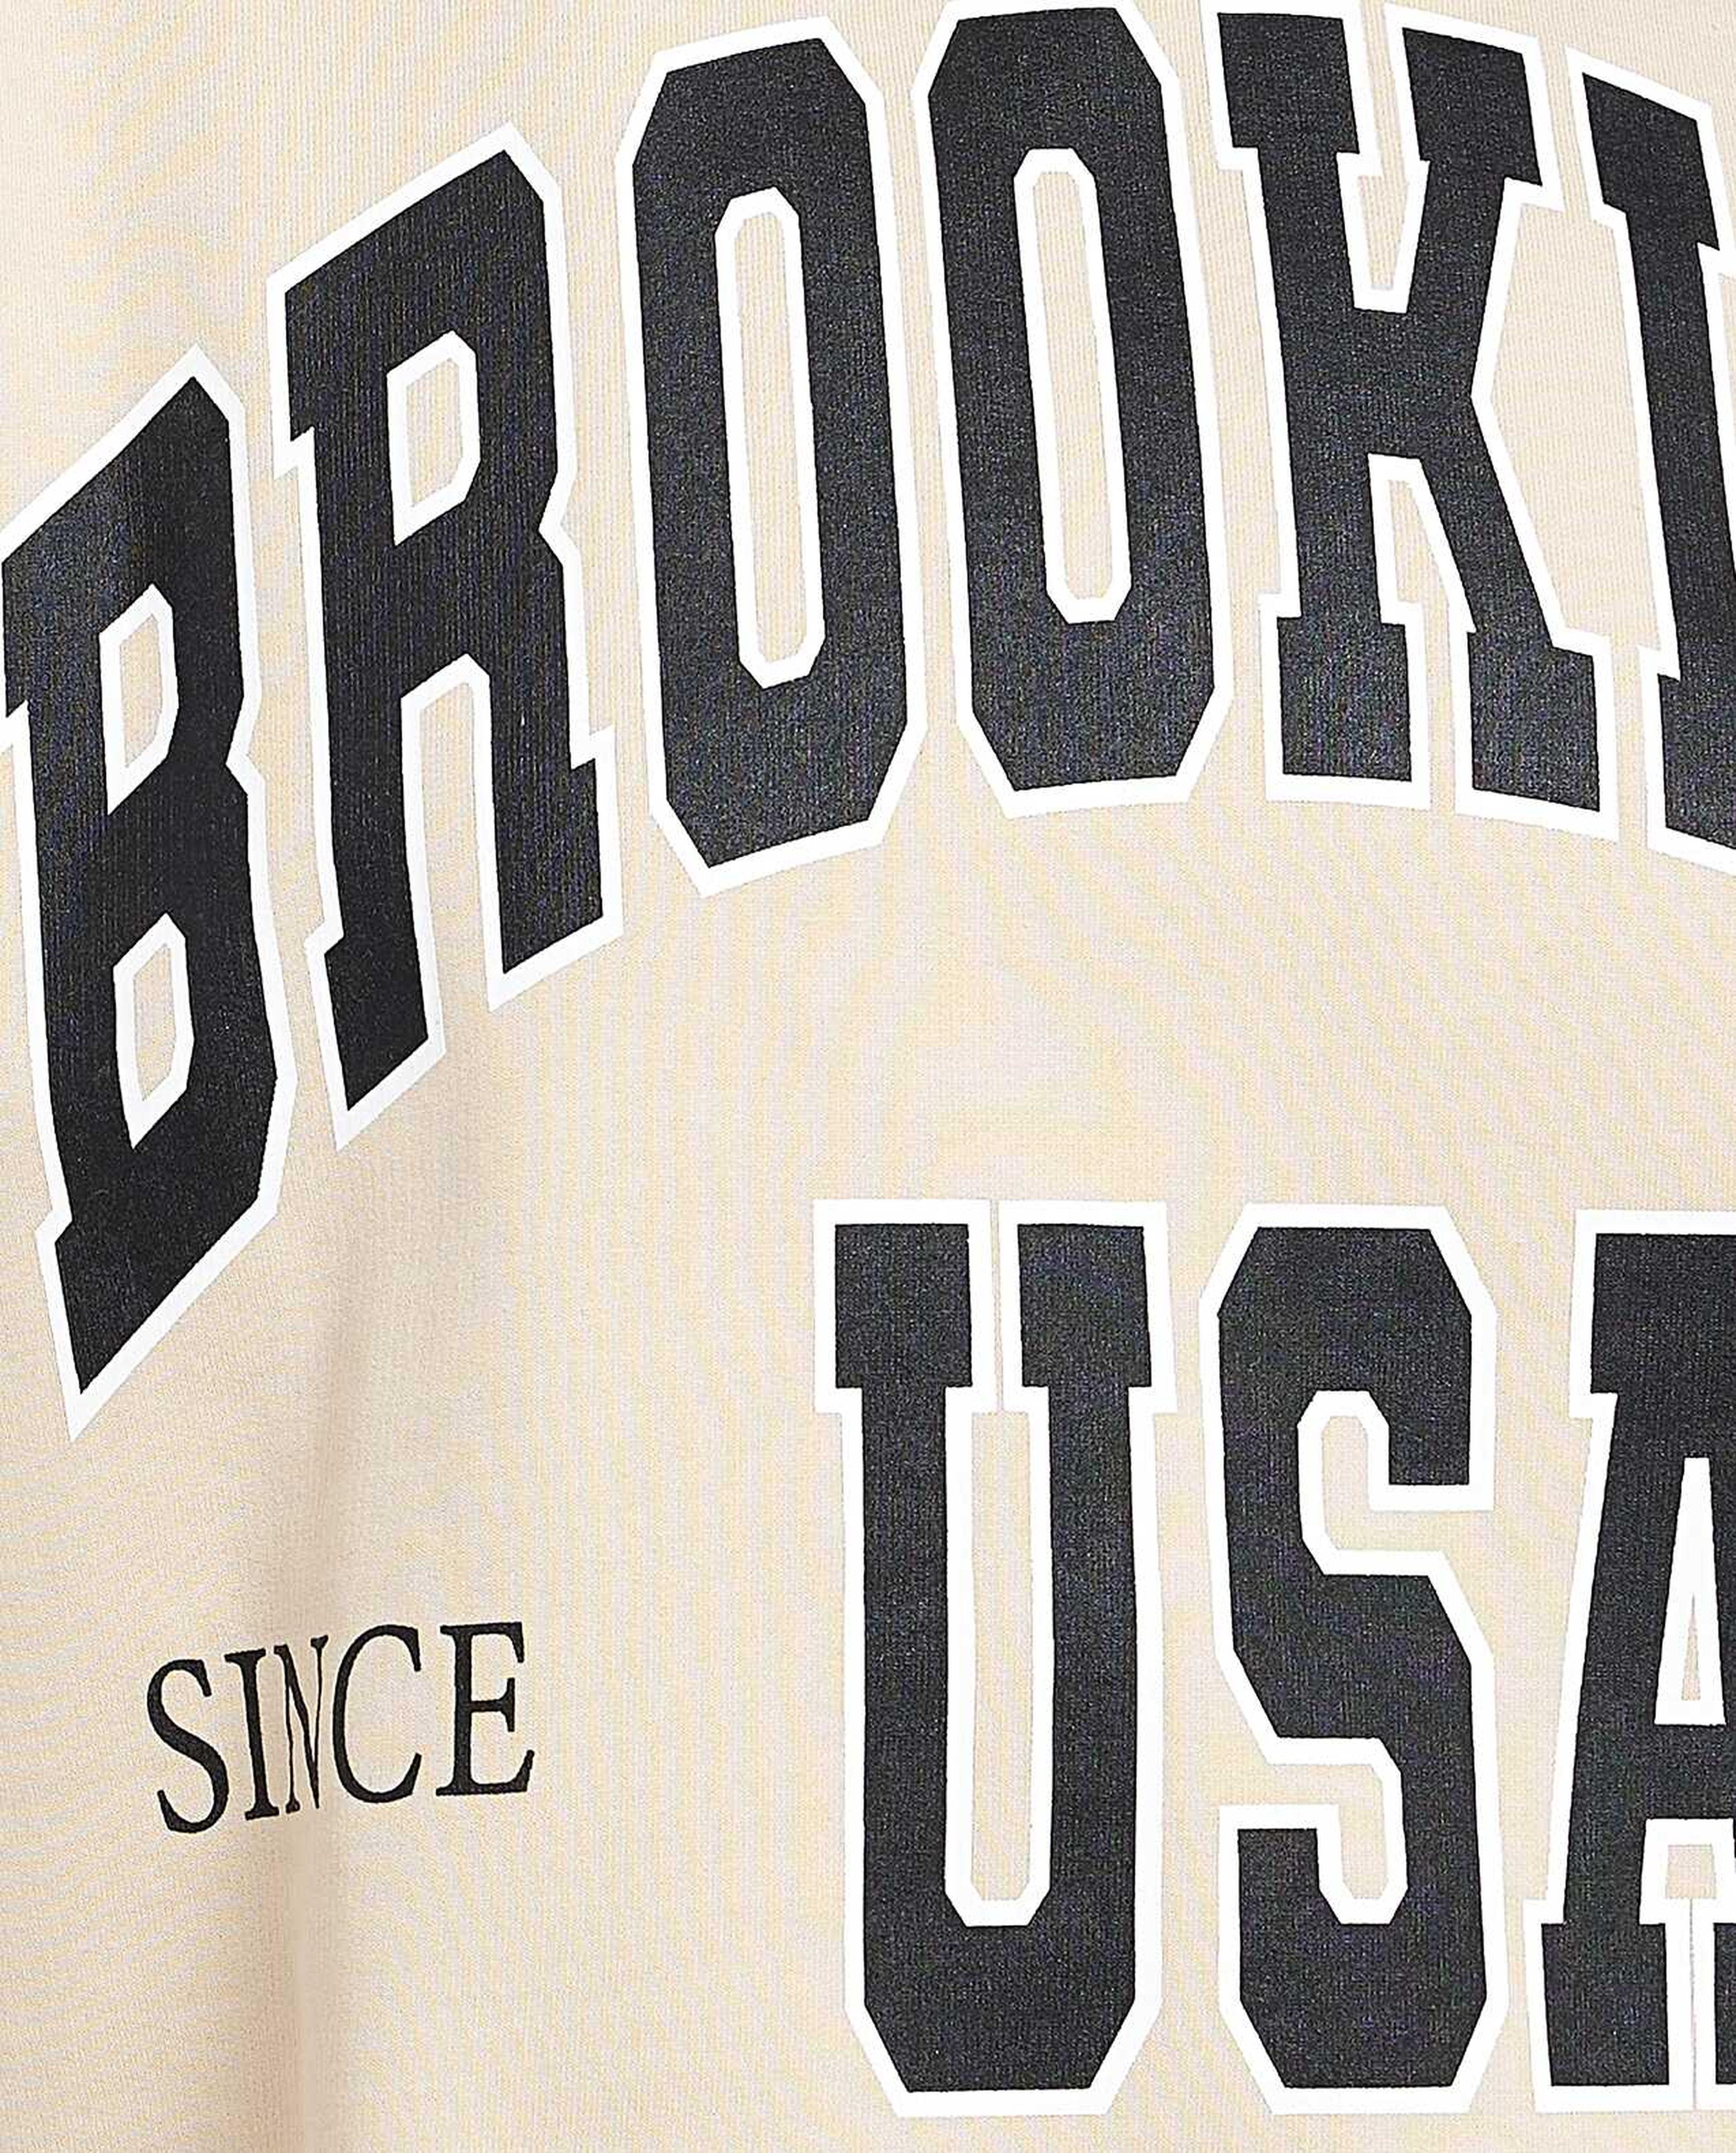 Typography Print Sweatshirt with Long Sleeves